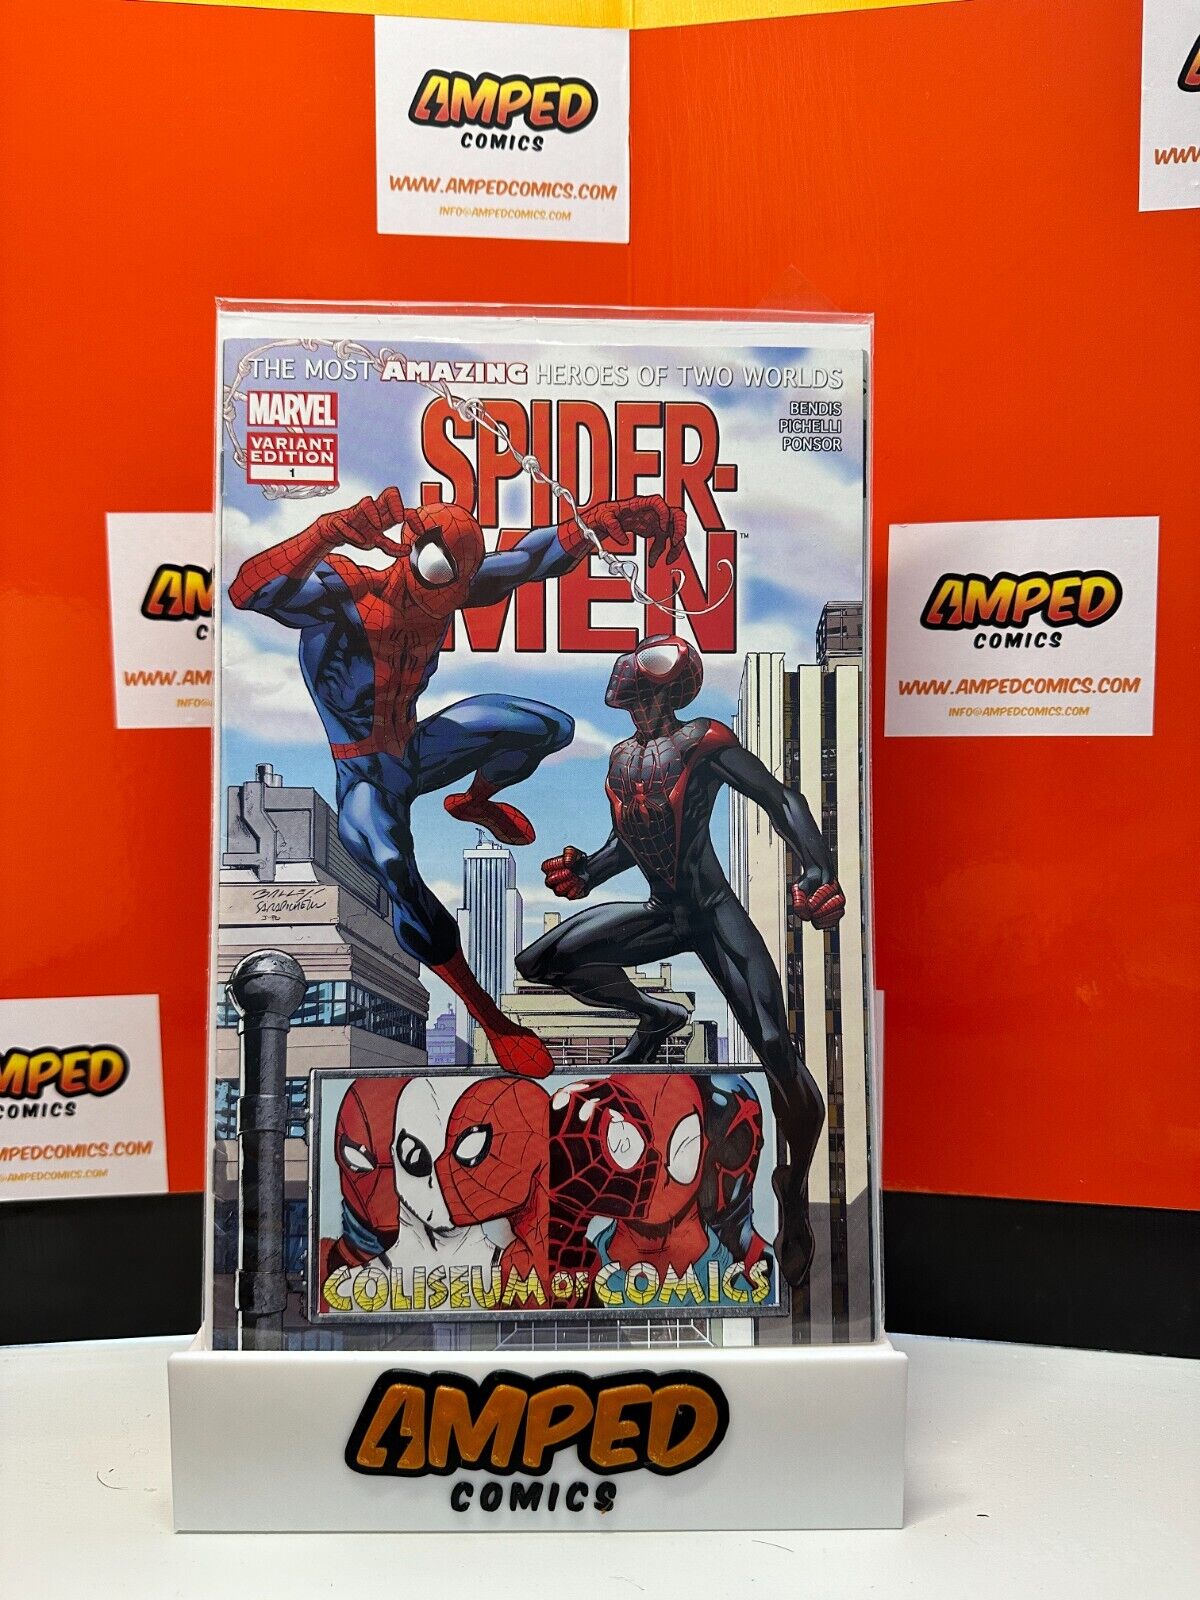 Spider-Men #1 2 3 4 5 Run 1-5 Complete Set (2012) Marvel Includes KEYS